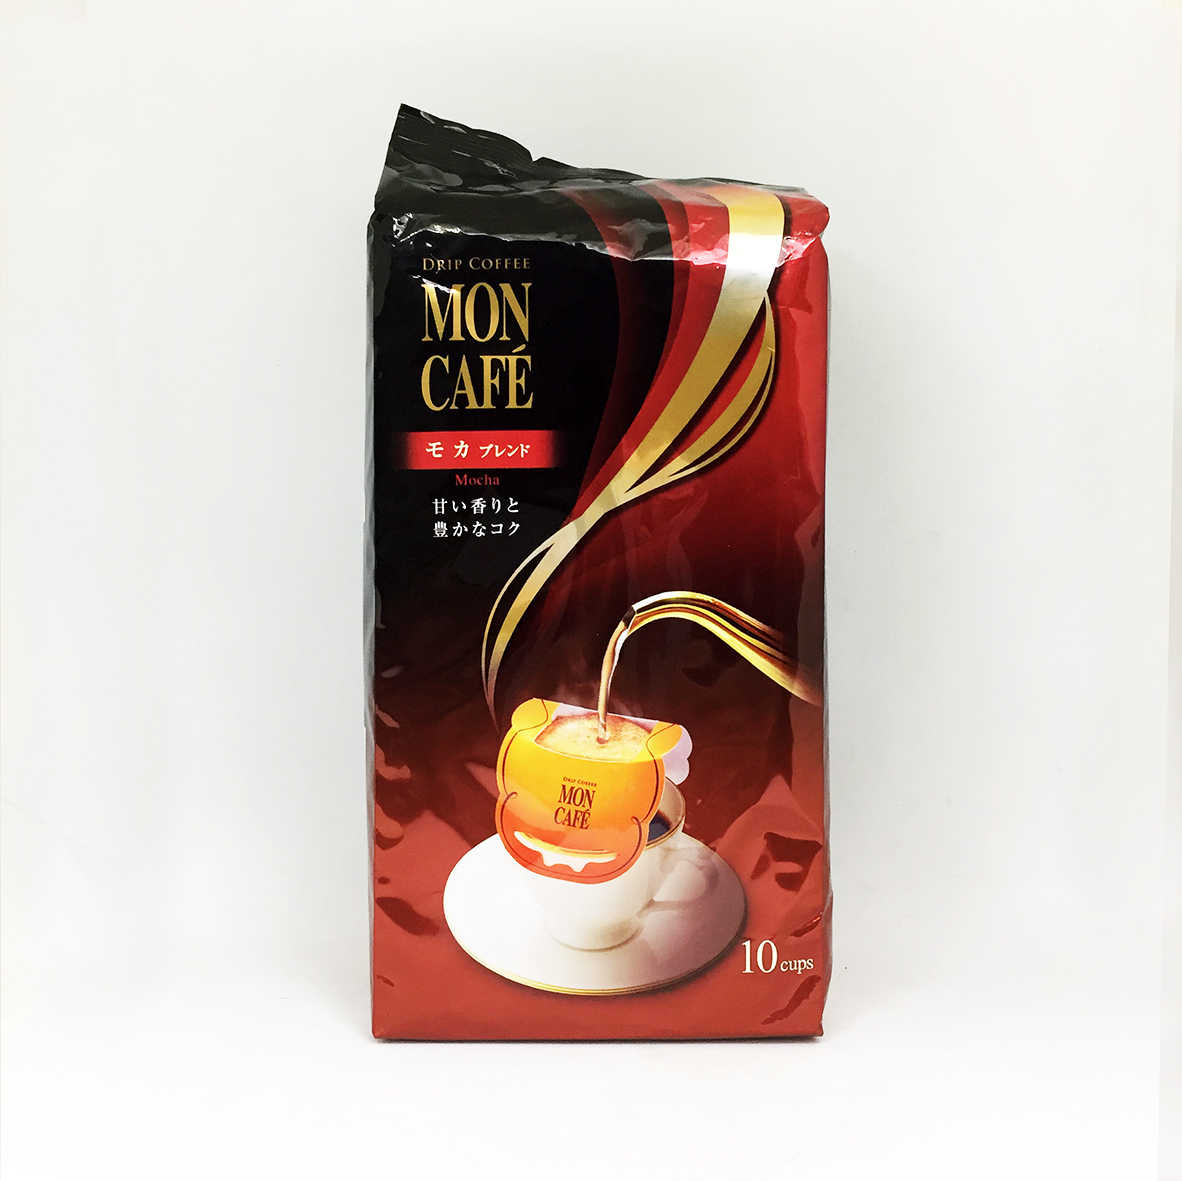 片岡 MON CAFE濾泡咖啡 10袋入 - 低咖啡因 / 摩卡 (掛耳咖啡)